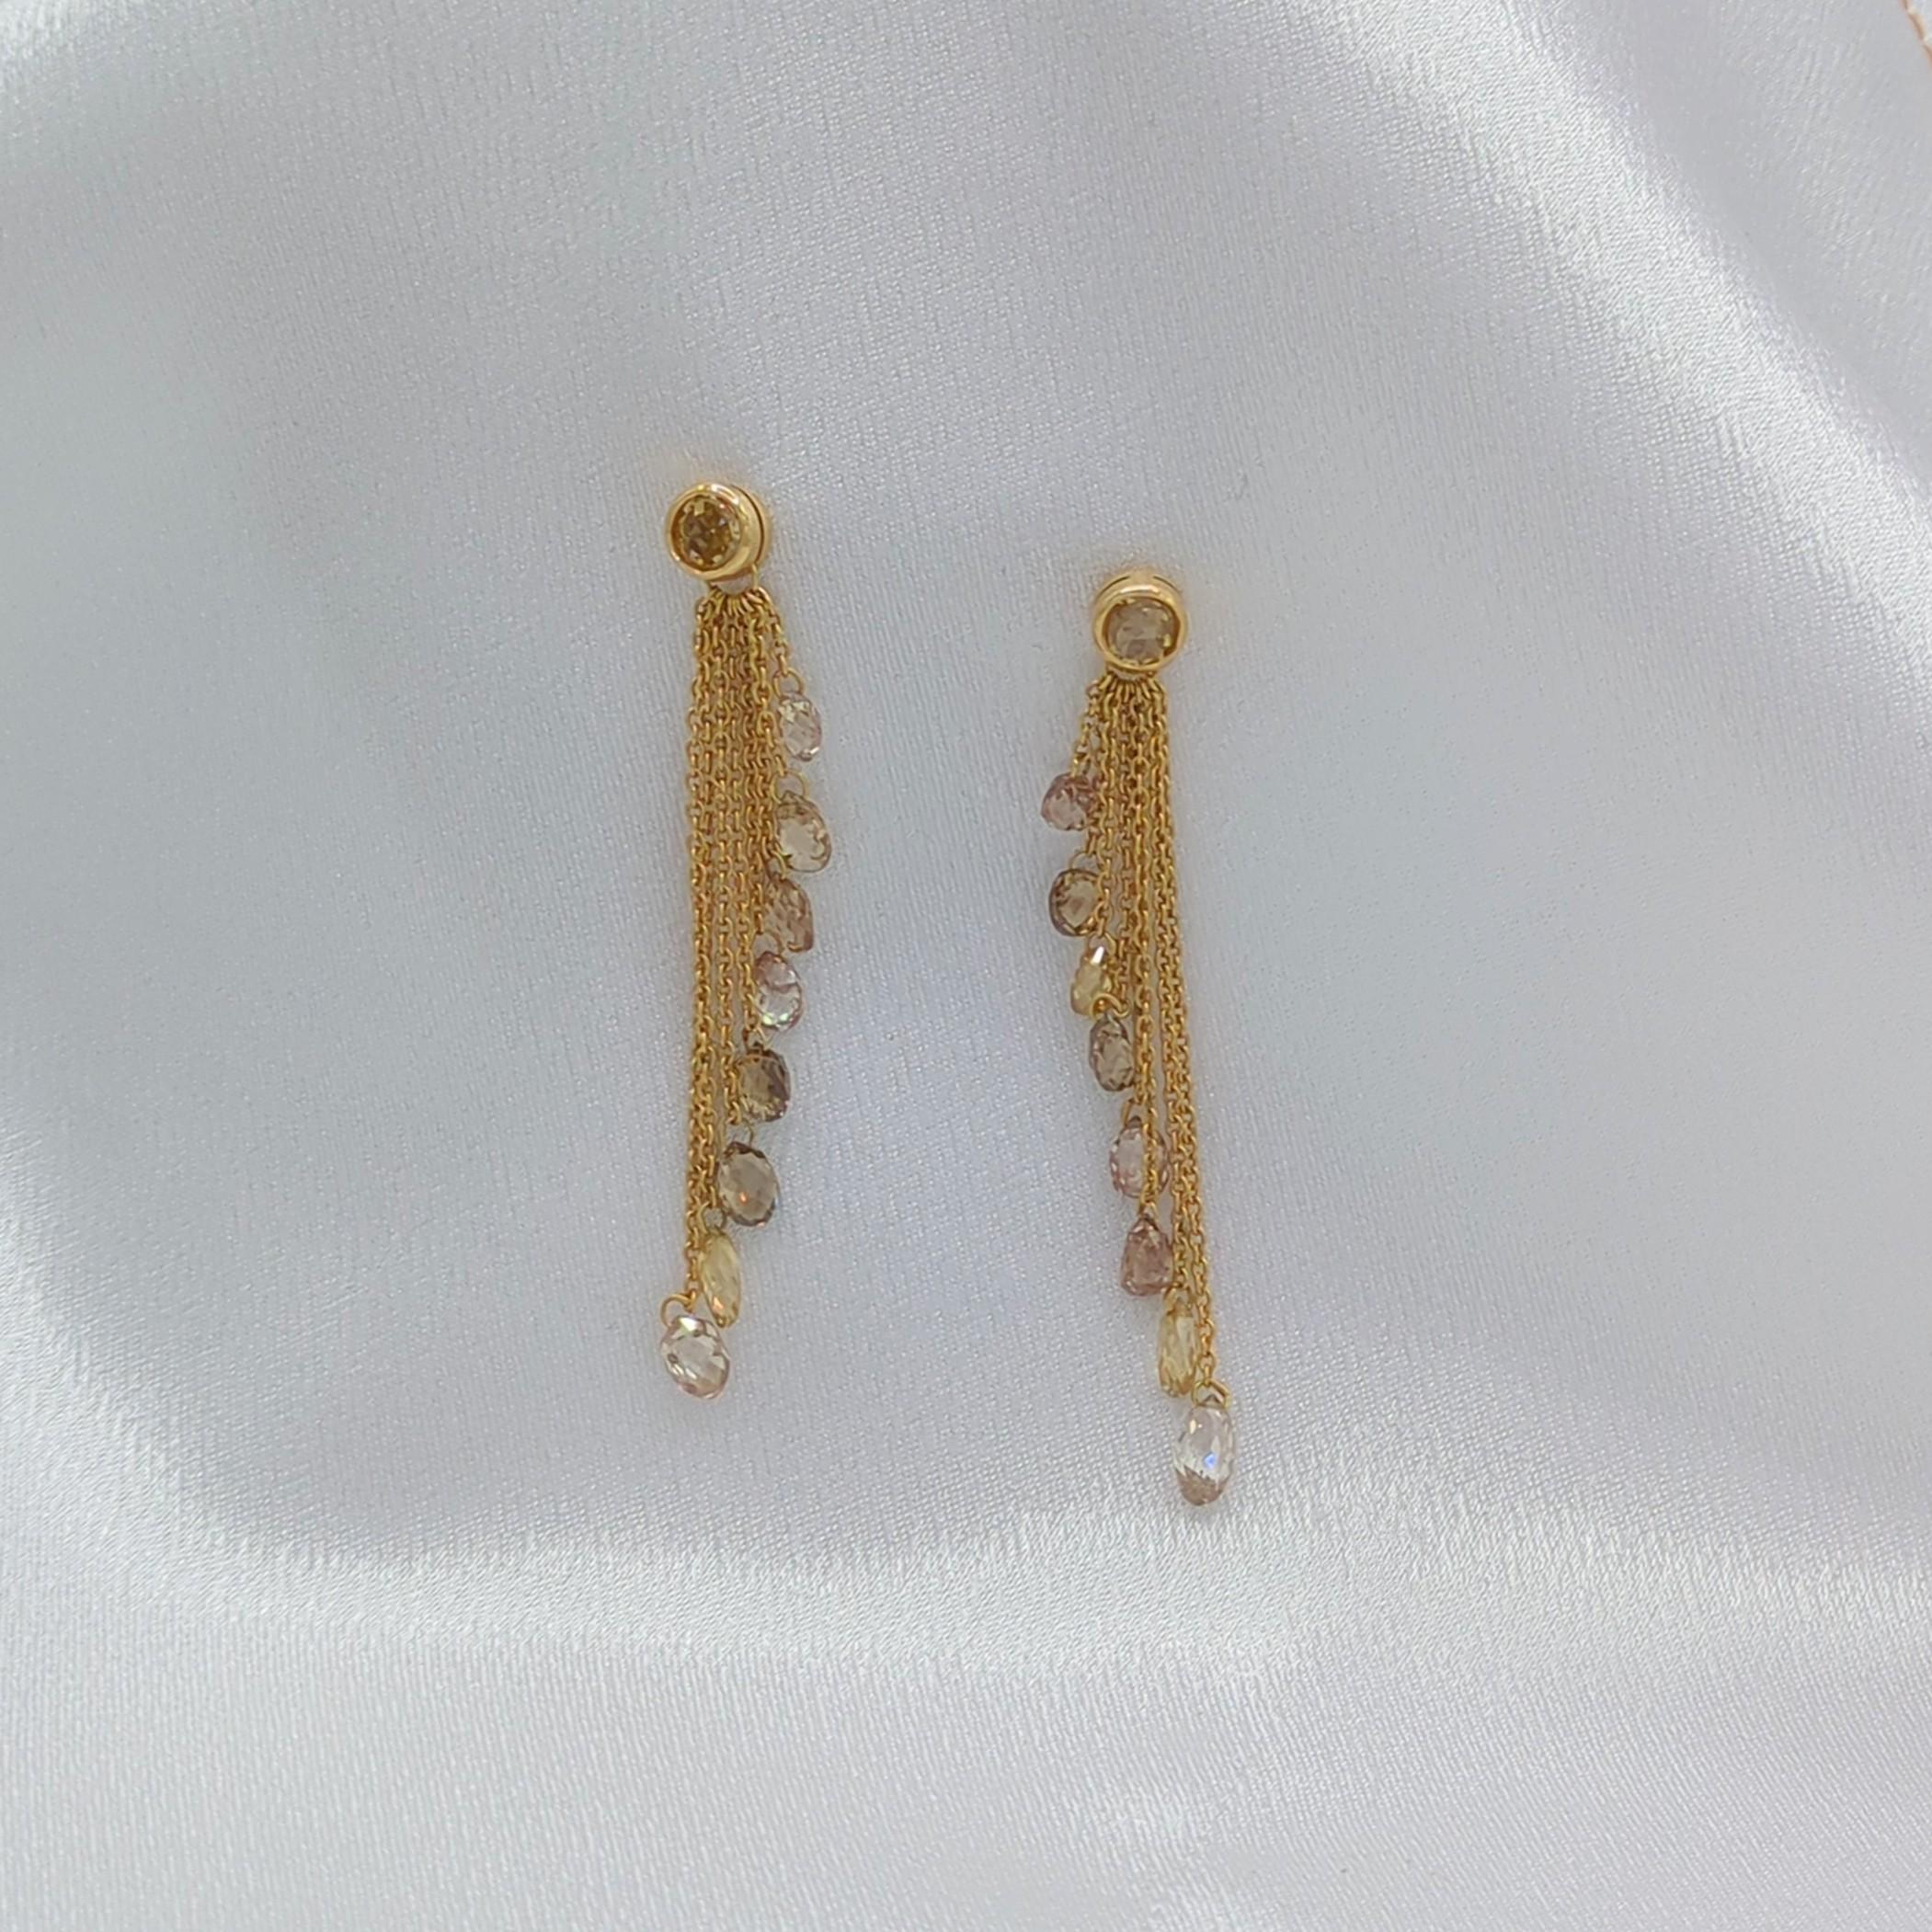 Briolette Champagne Diamond Dangle Earrings in 18K Yellow Gold 2